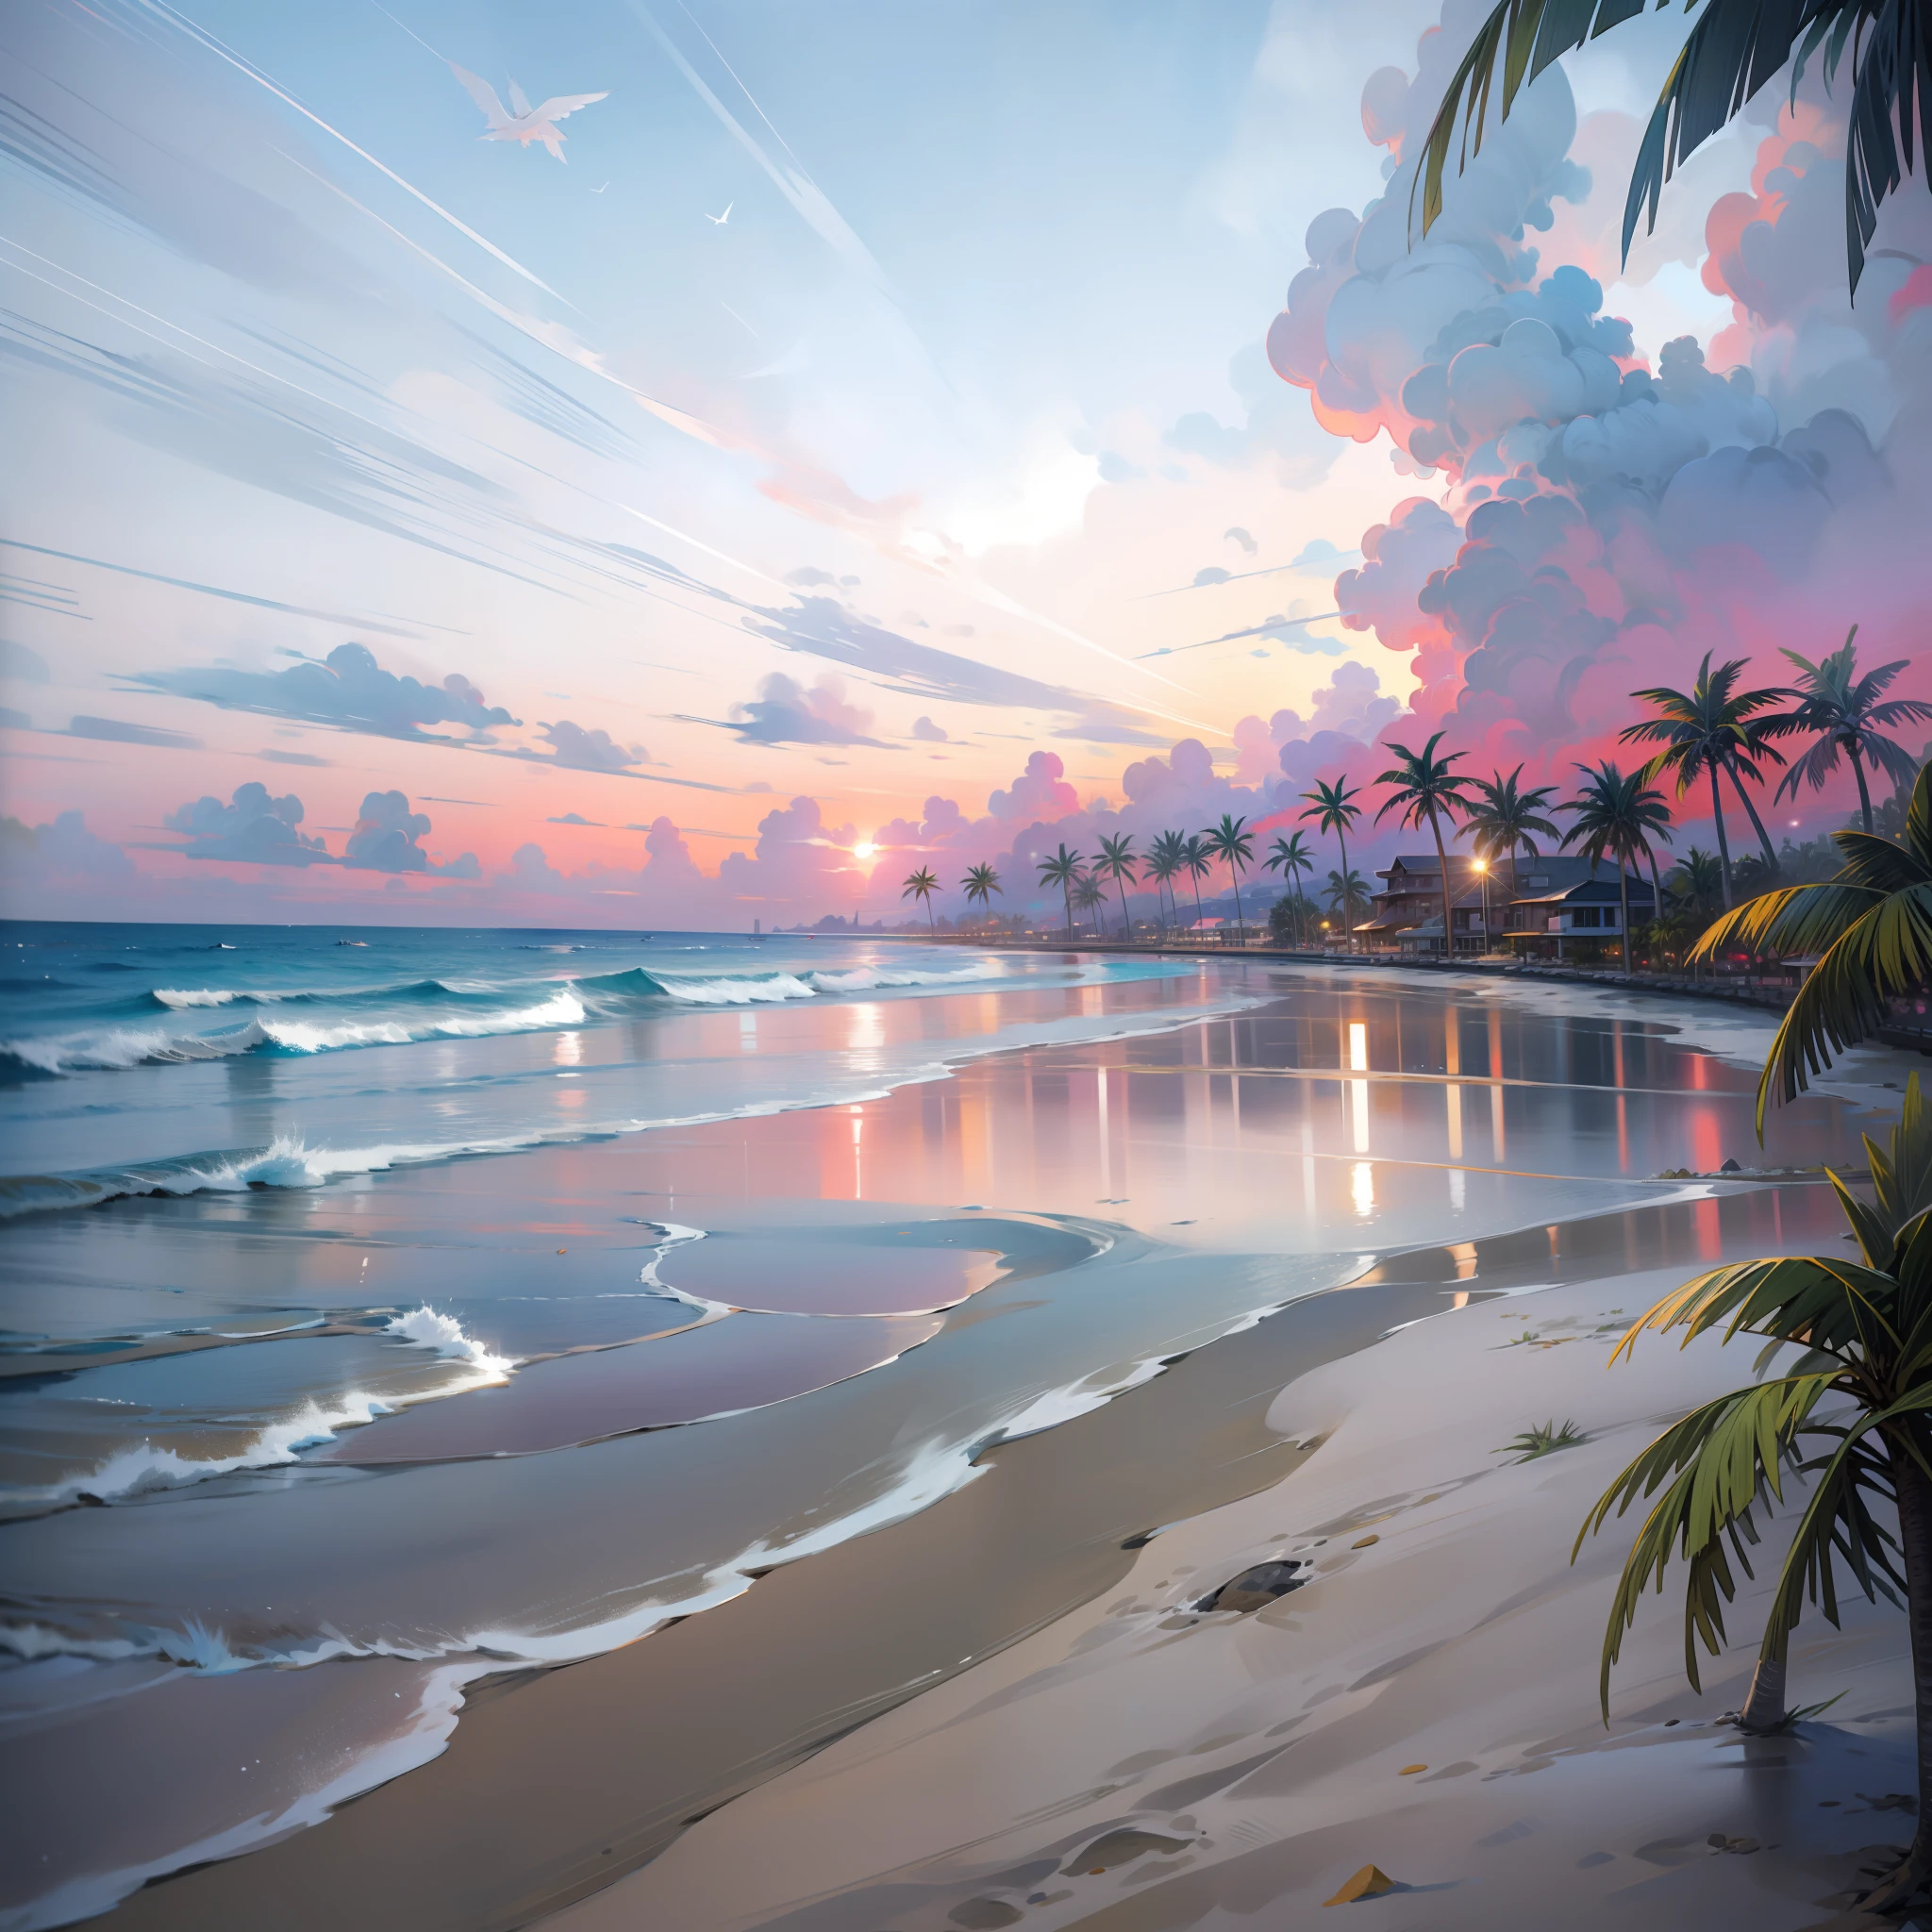 Совершенно завораживающий закат на пляже с миксом оранжевого цвета, розовый и желтый в небе. Вода кристально чистая, нежно целуя берег, и пляж с белым песком простирается настолько далеко, насколько хватает глаз.. Сцена динамичная и захватывающая, с чайками, парящими высоко в небе, и нежно покачивающимися пальмами. Окунитесь в спокойную атмосферу и позвольте спокойствию окутать вас..